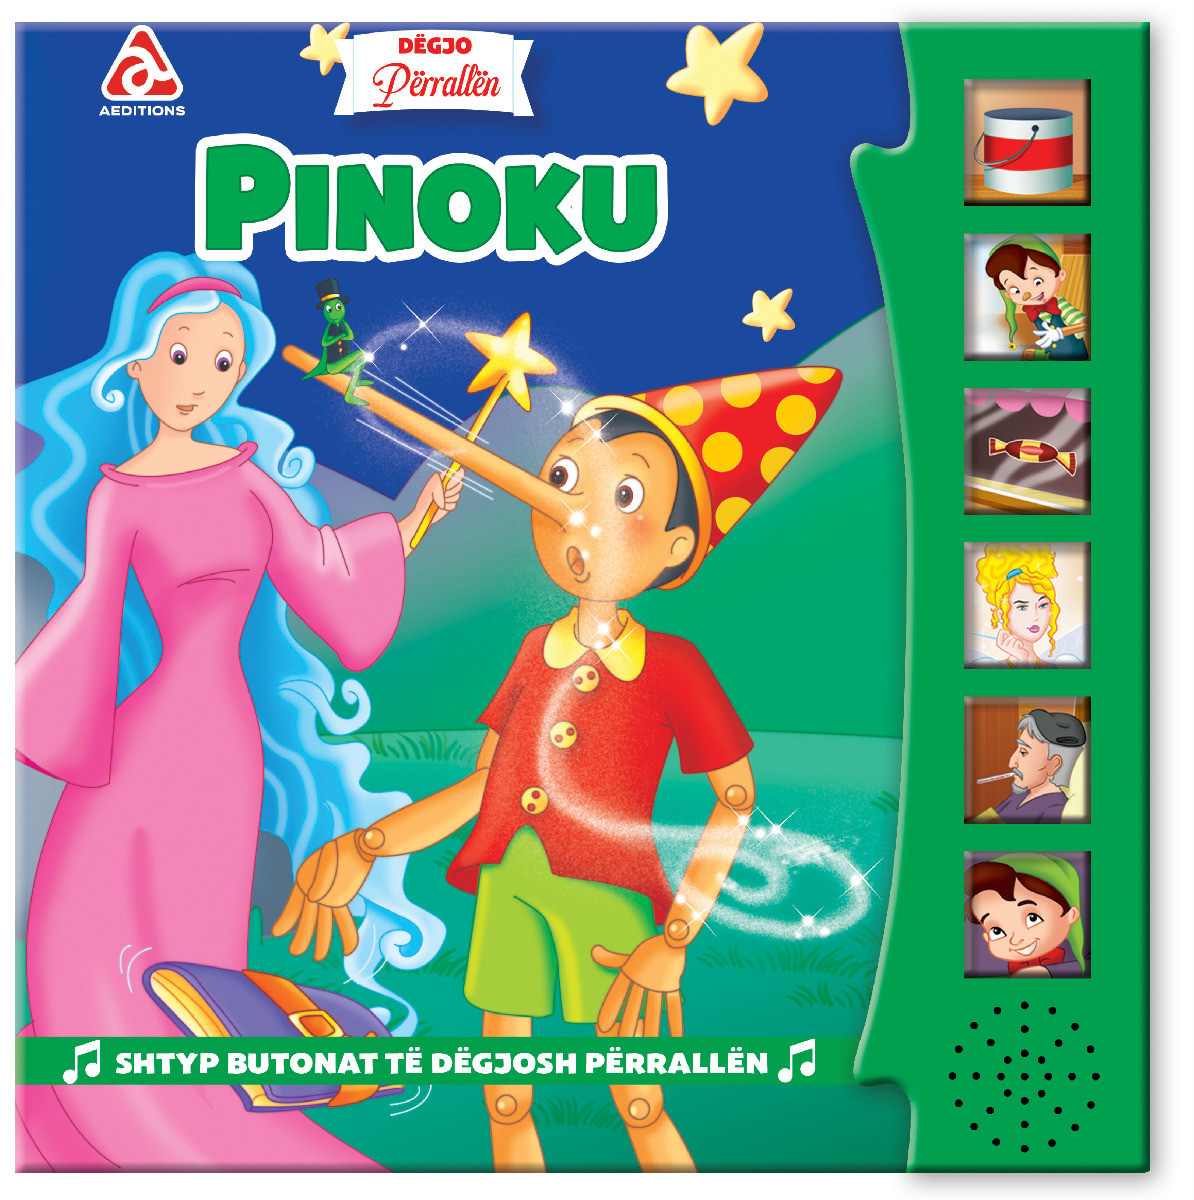 Degjo perrallen - Pinoku